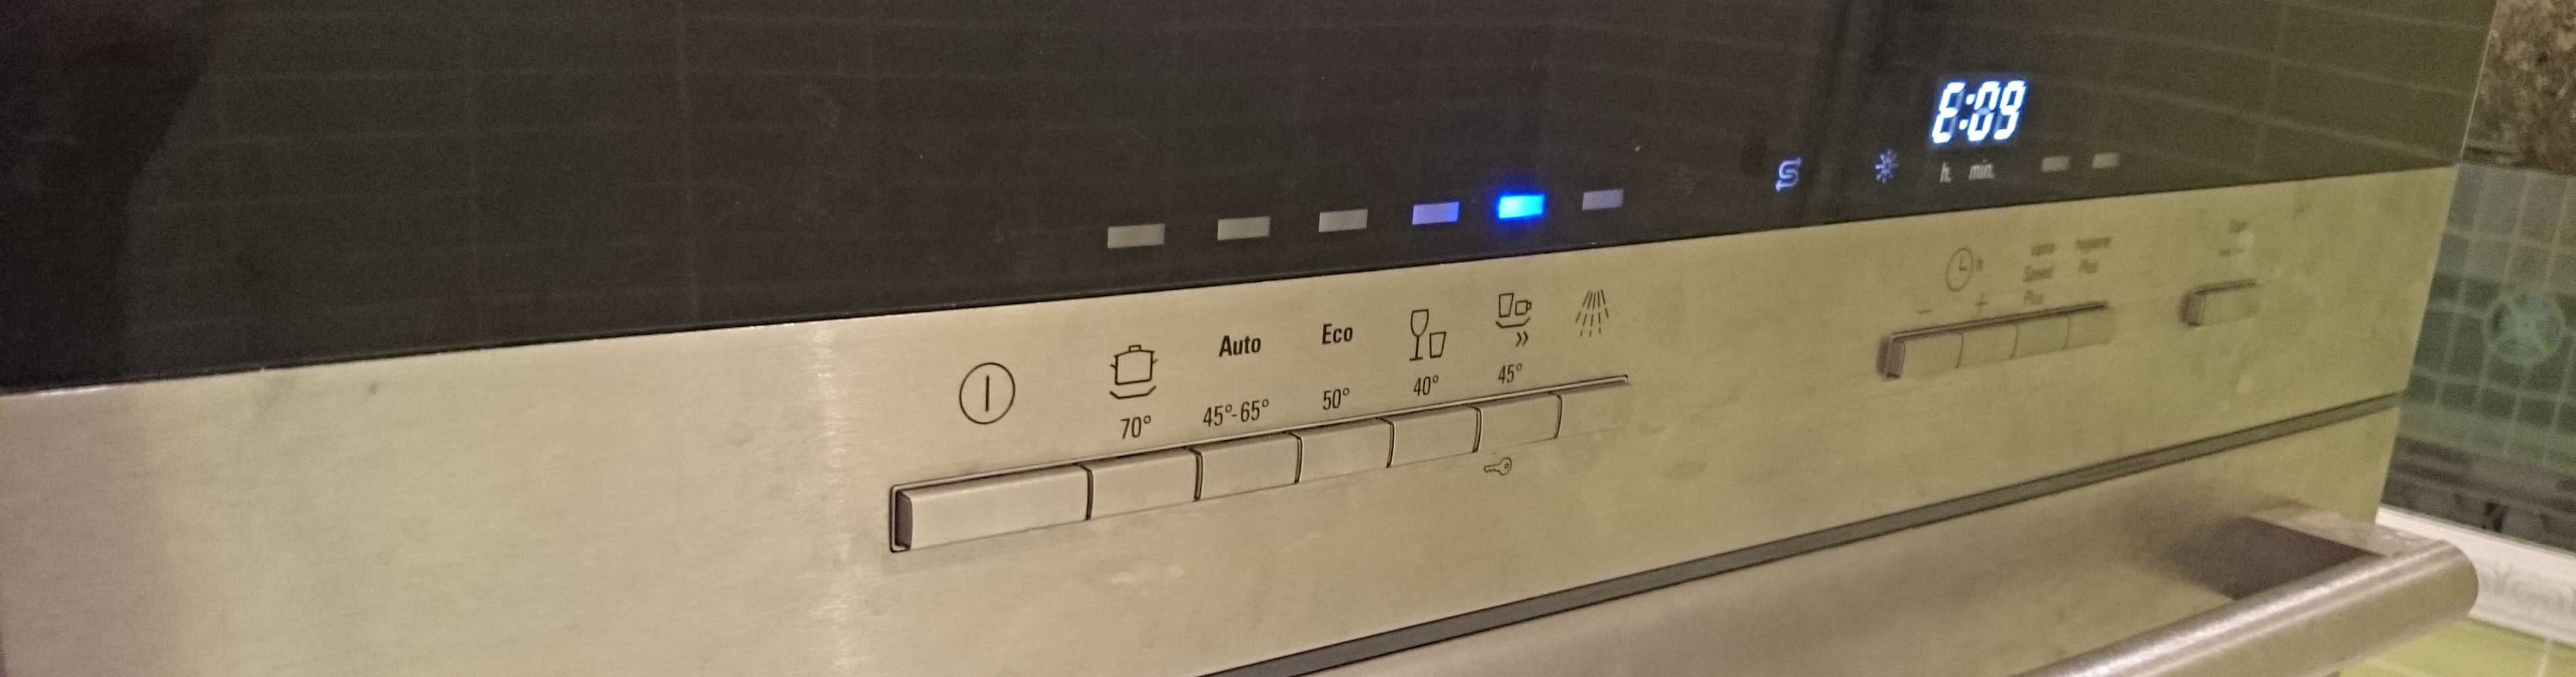 Индикаторы и значки на посудомоечной машине – значение